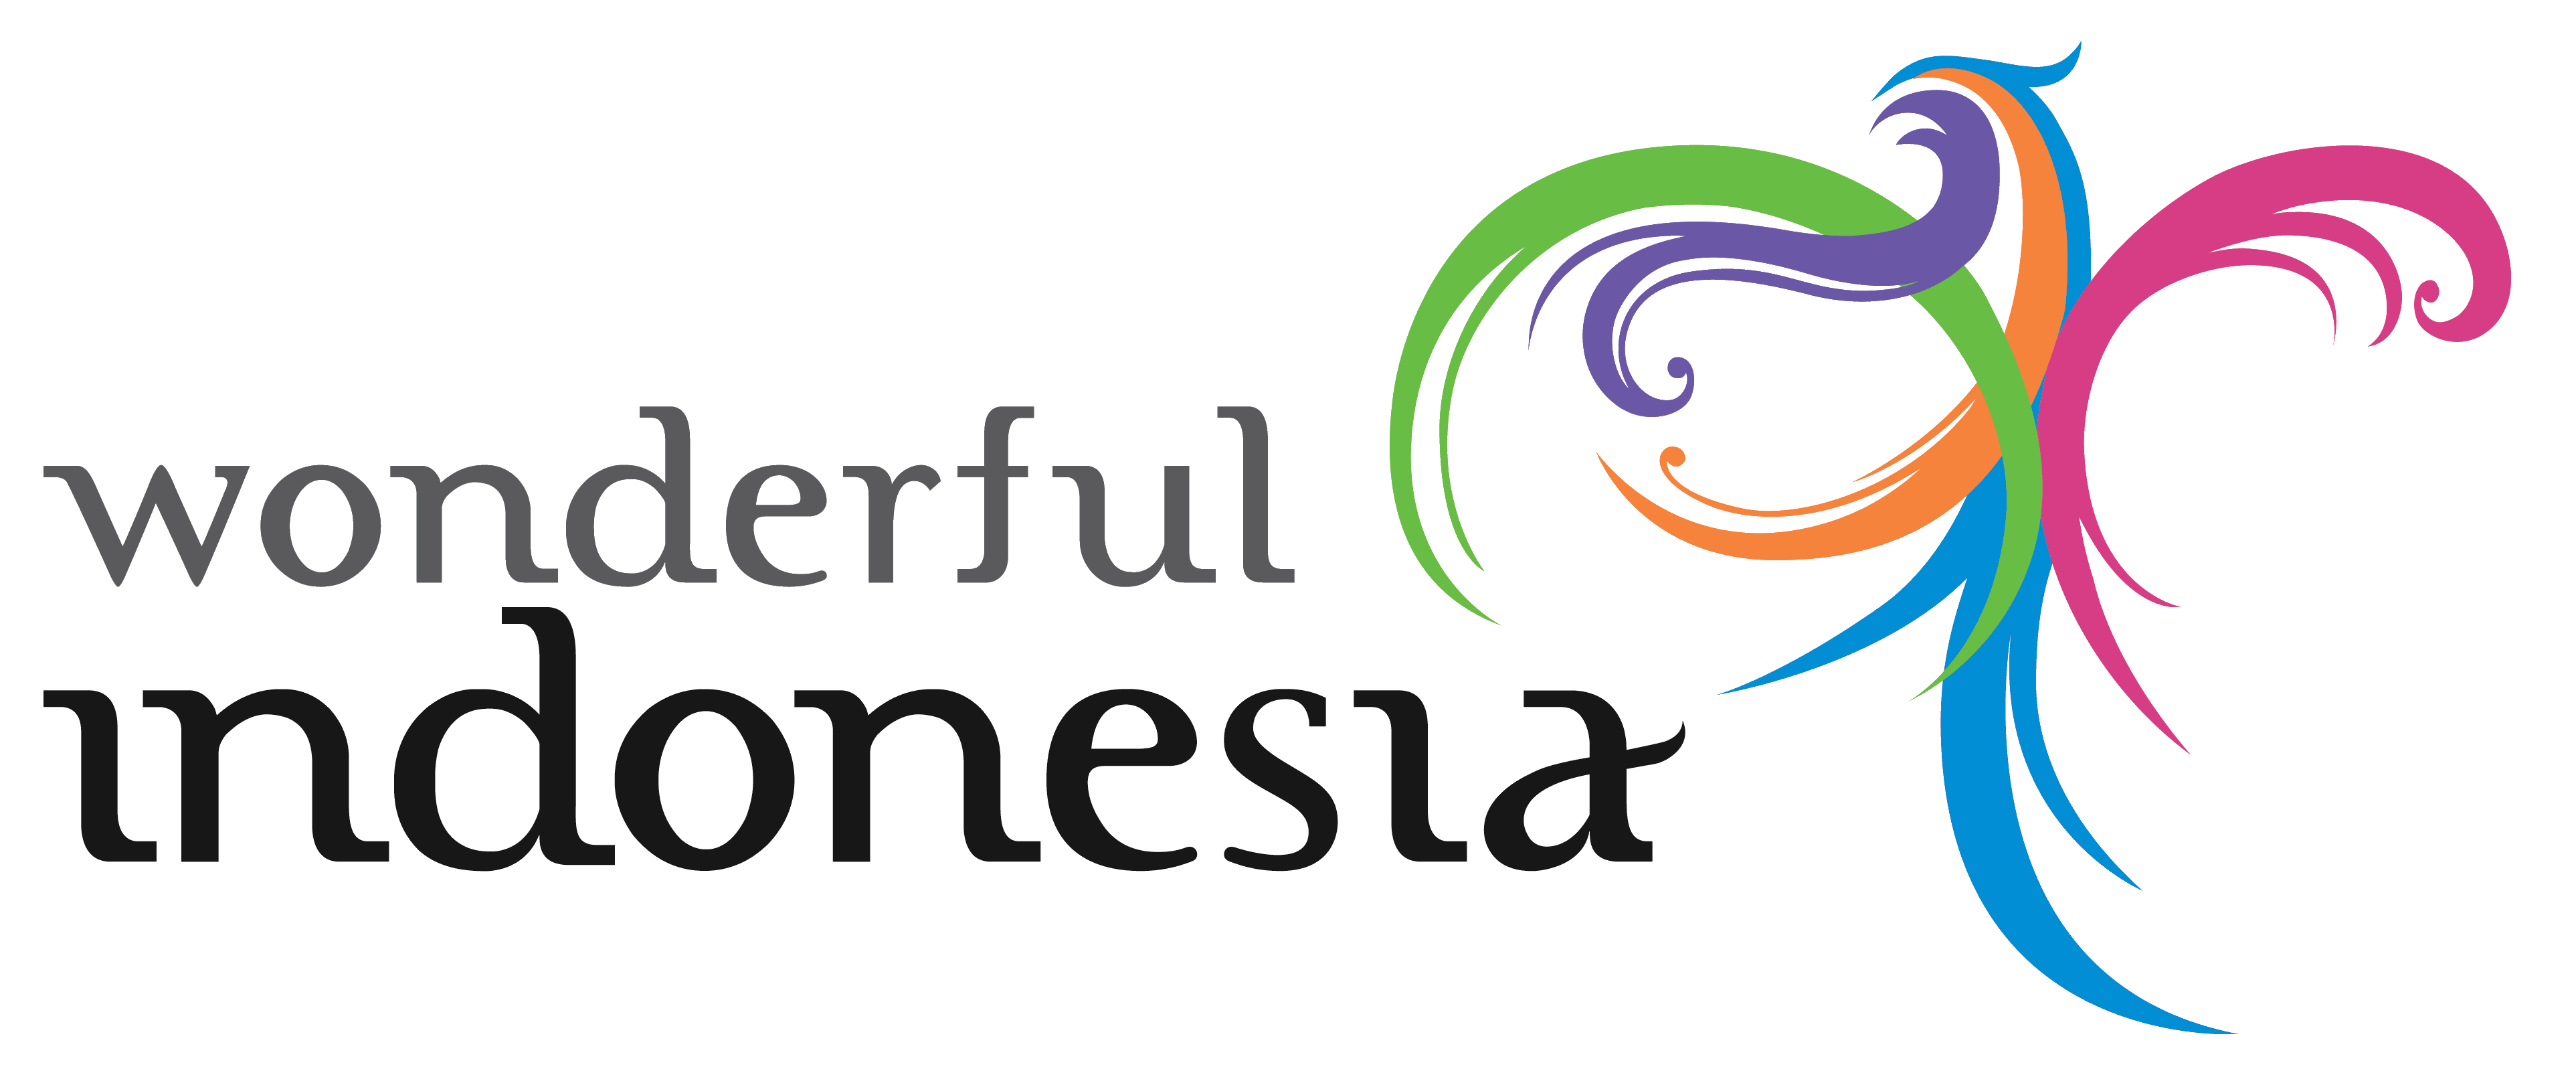 Wonderful Logo - Wonderful Indonesia – Logos Download